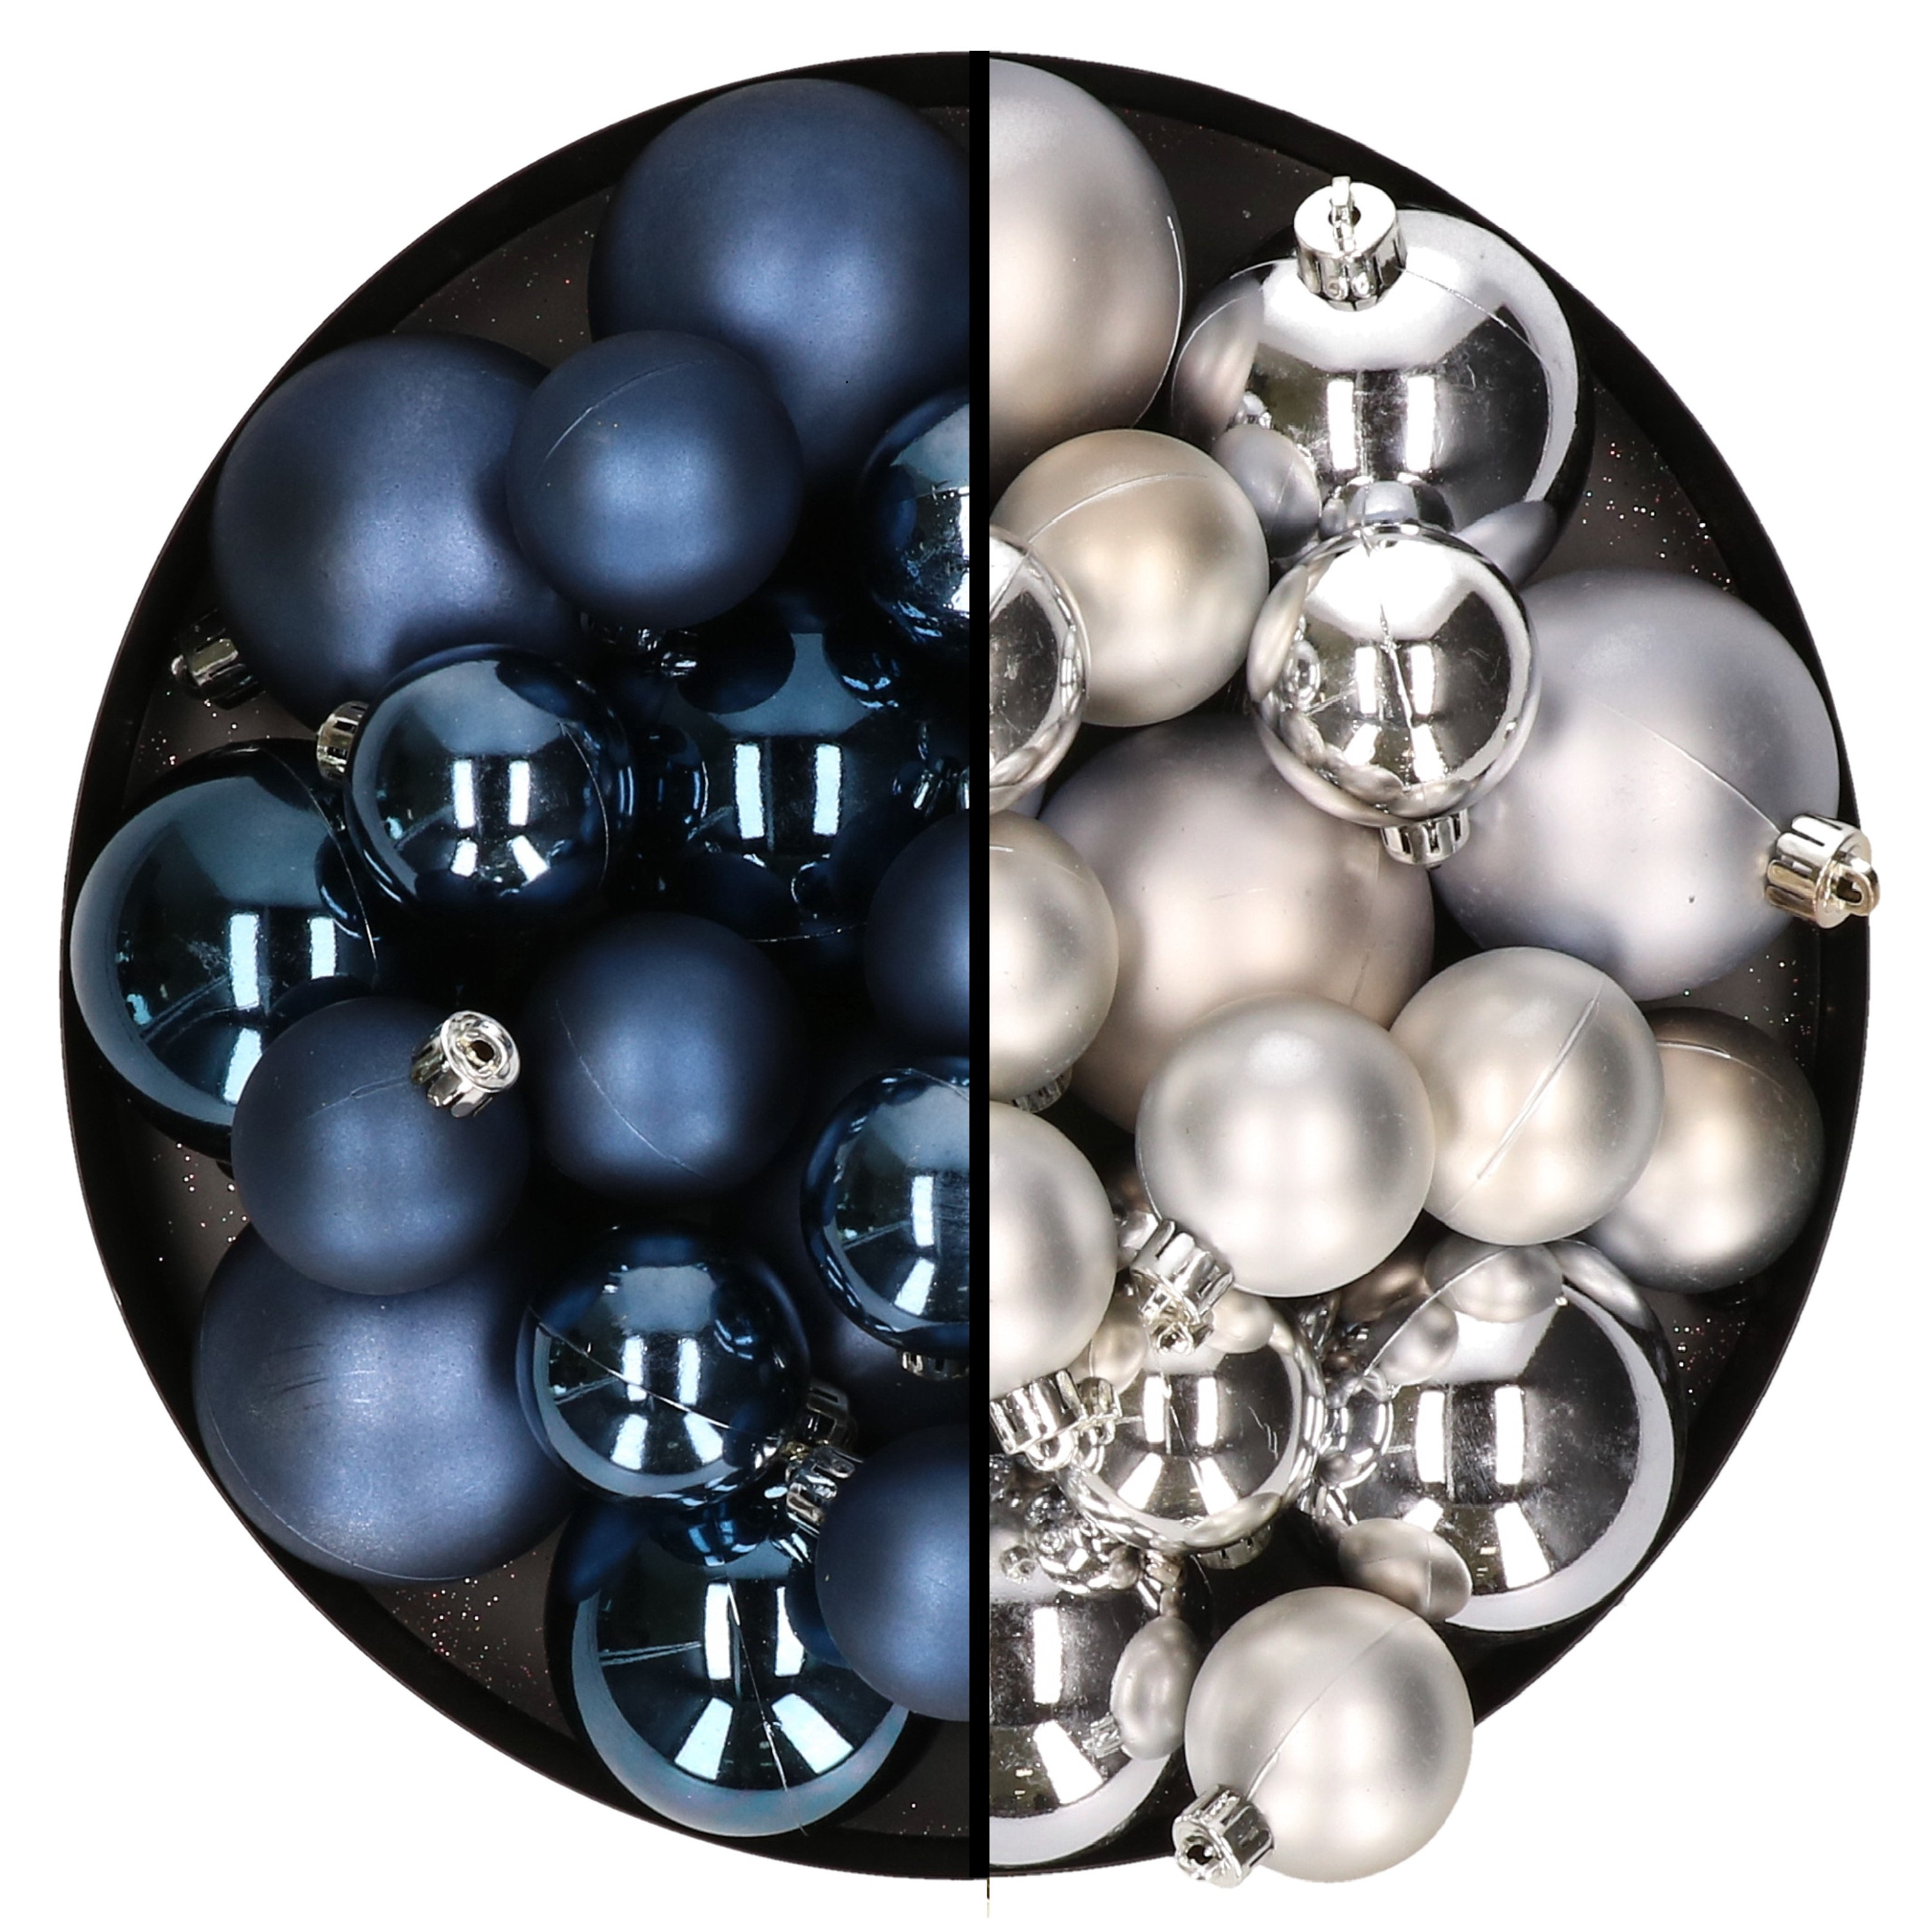 Kerstversiering kunststof kerstballen mix donkerblauw-zilver 4-6-8 cm pakket van 68x stuks